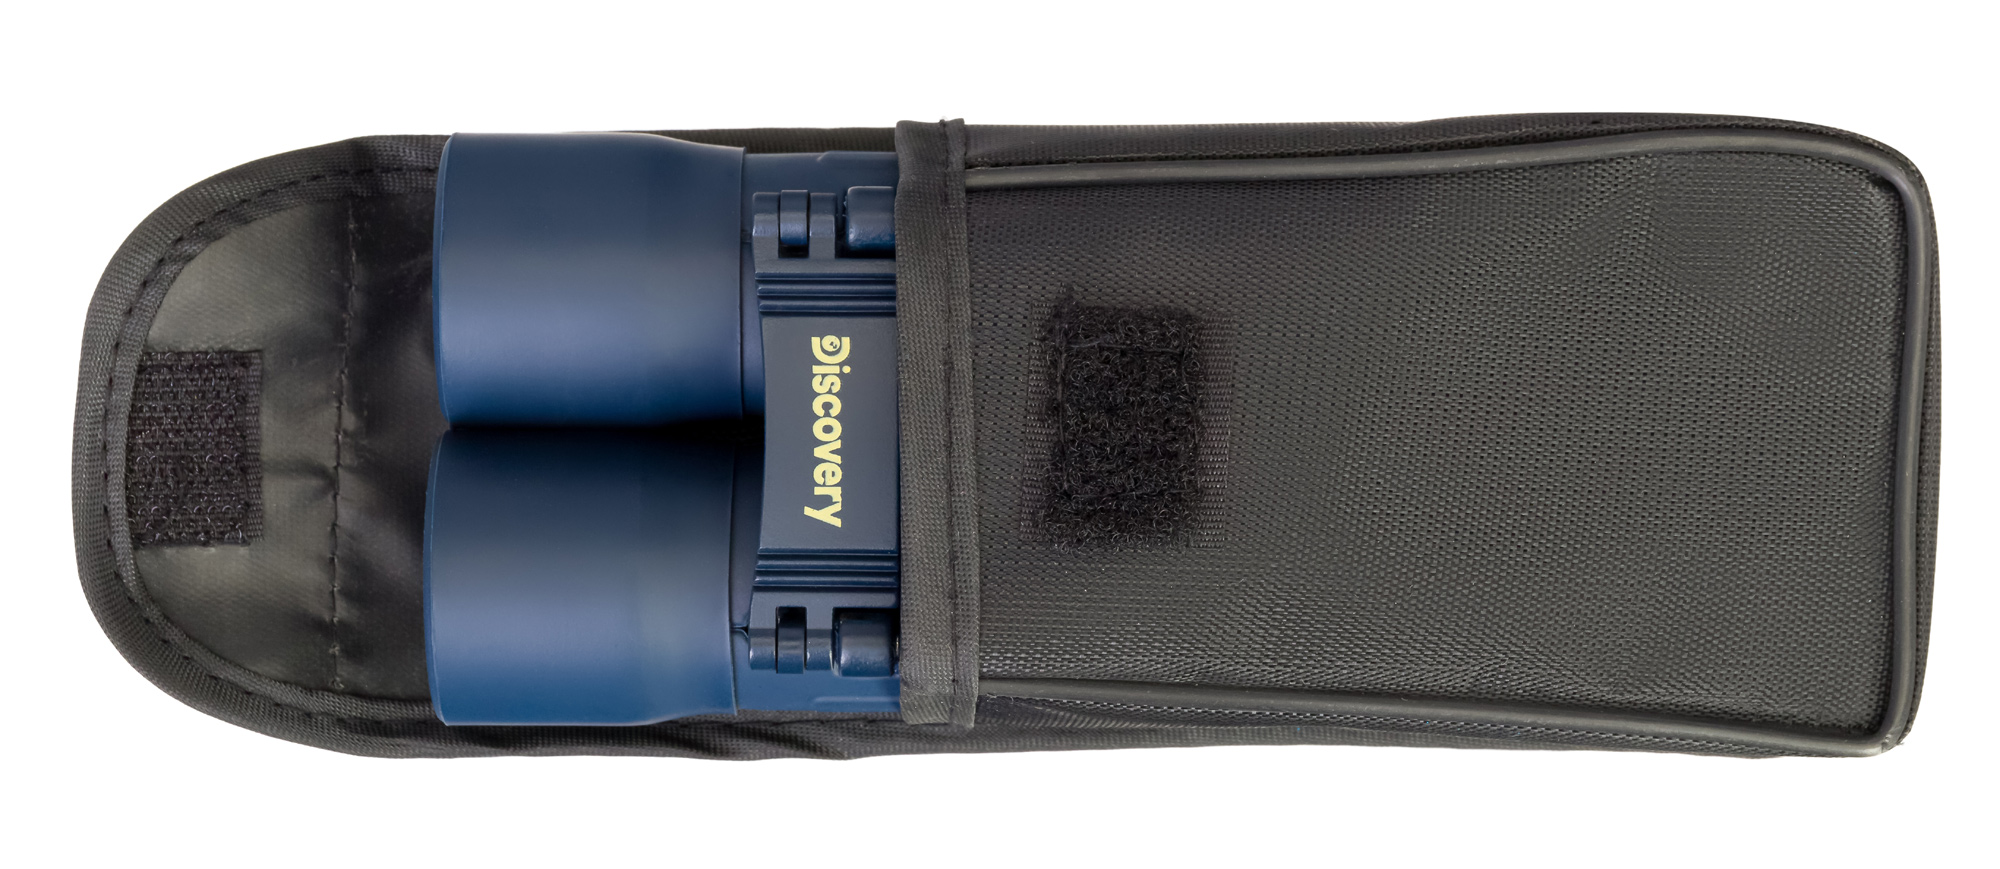 Kompaktný binokulárny ïalekoh¾ad Discovery Basics BB 10x25 je dodávaný s ochranným puzdrom, takže si ho ¾ahko môžete zobra� so sebou na dlhé výlety, odpoèinkové prechádzky èi na dobrodružné výpravy a expedície.